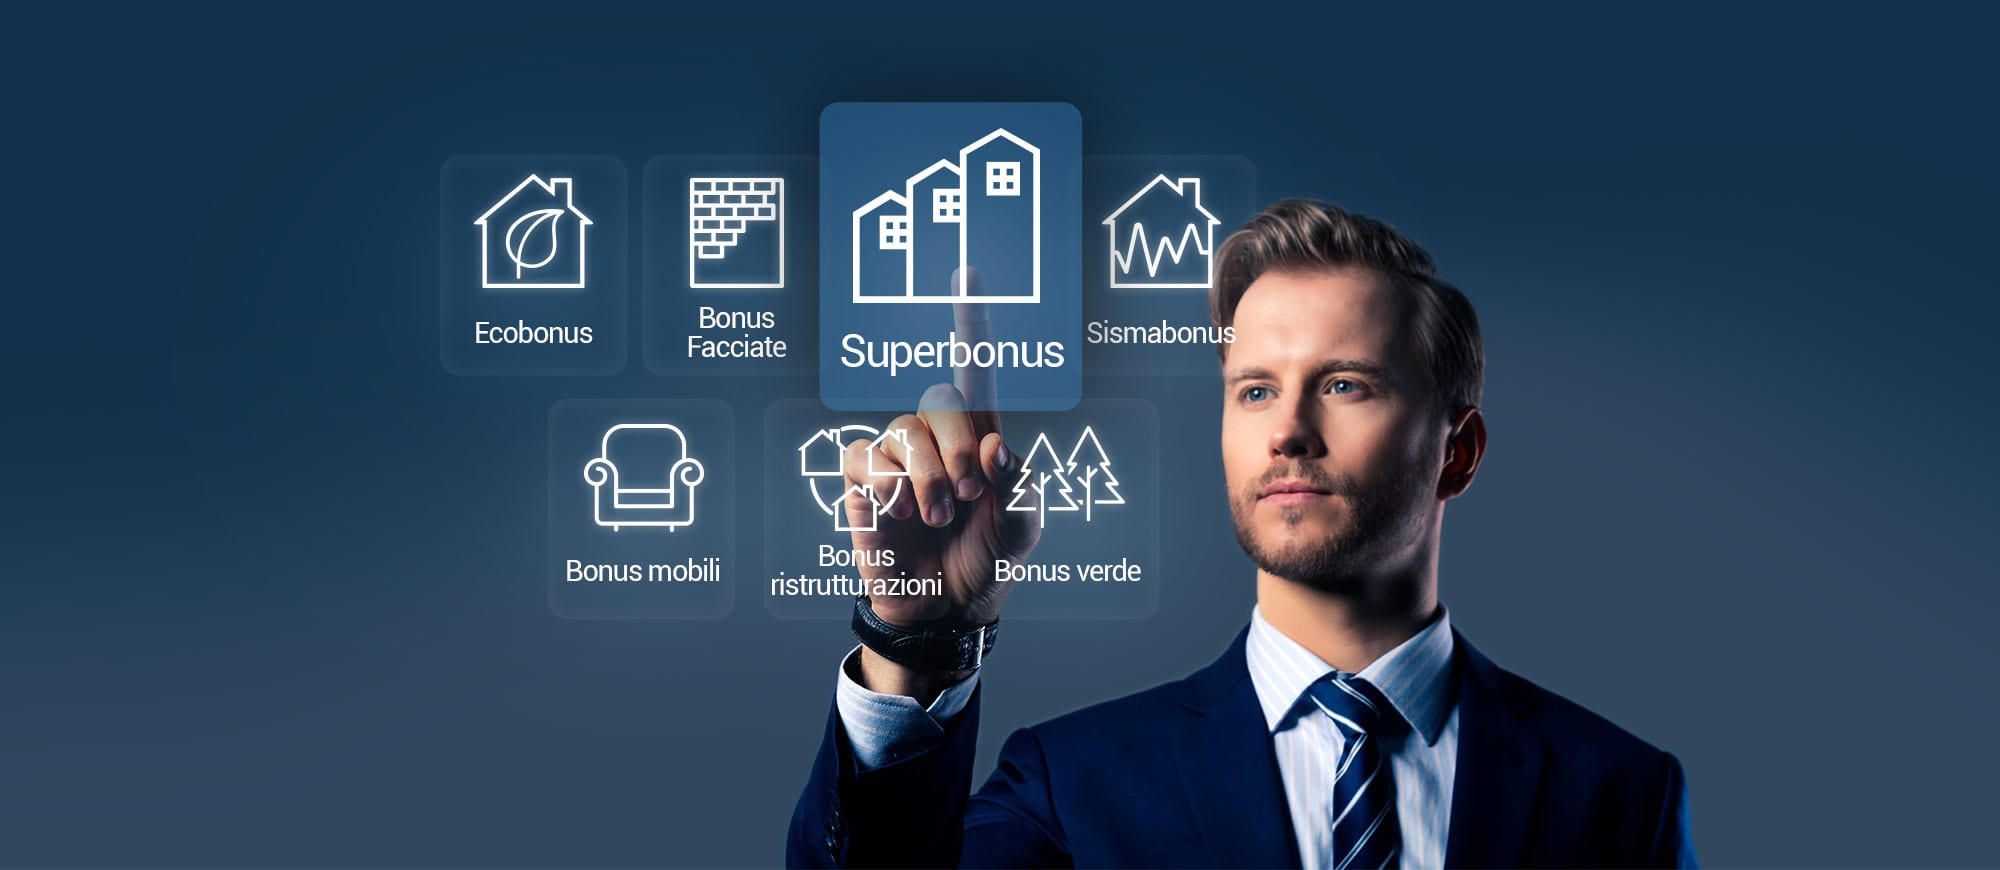 Gestisci Superbonus 110% e tutti i bonus edilizi con un unico software | usBIM.superbonus | ACCA software